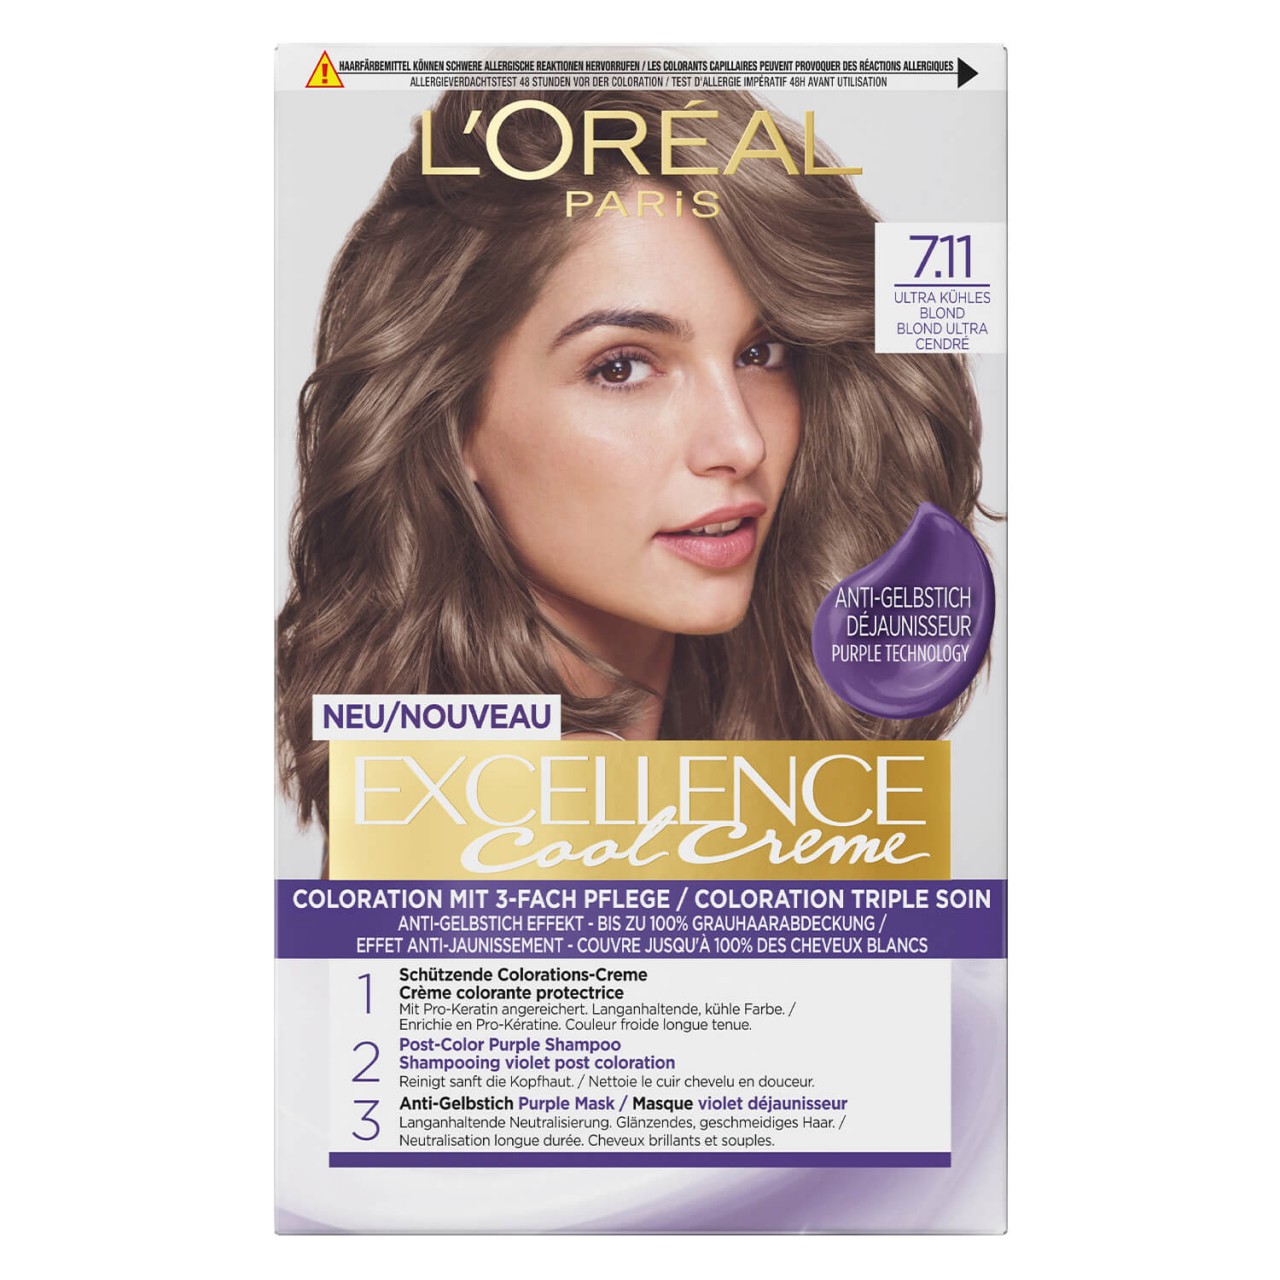 LOréal Excellence Color - Cool Crème 7.11 Ultra Kühles Blond von L'Oréal Paris